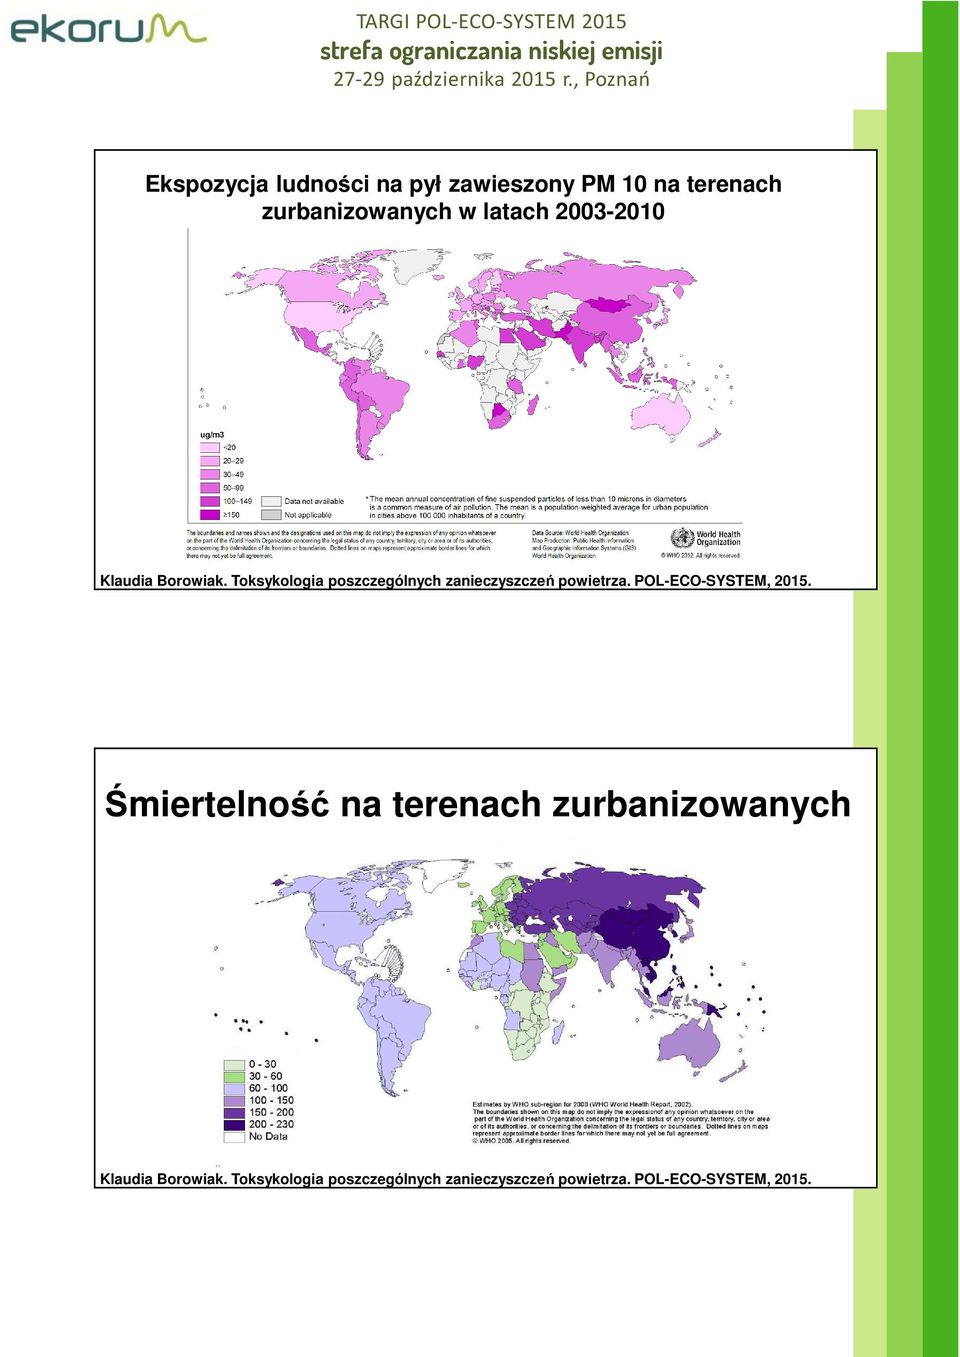 zurbanizowanych w latach 2003-2010